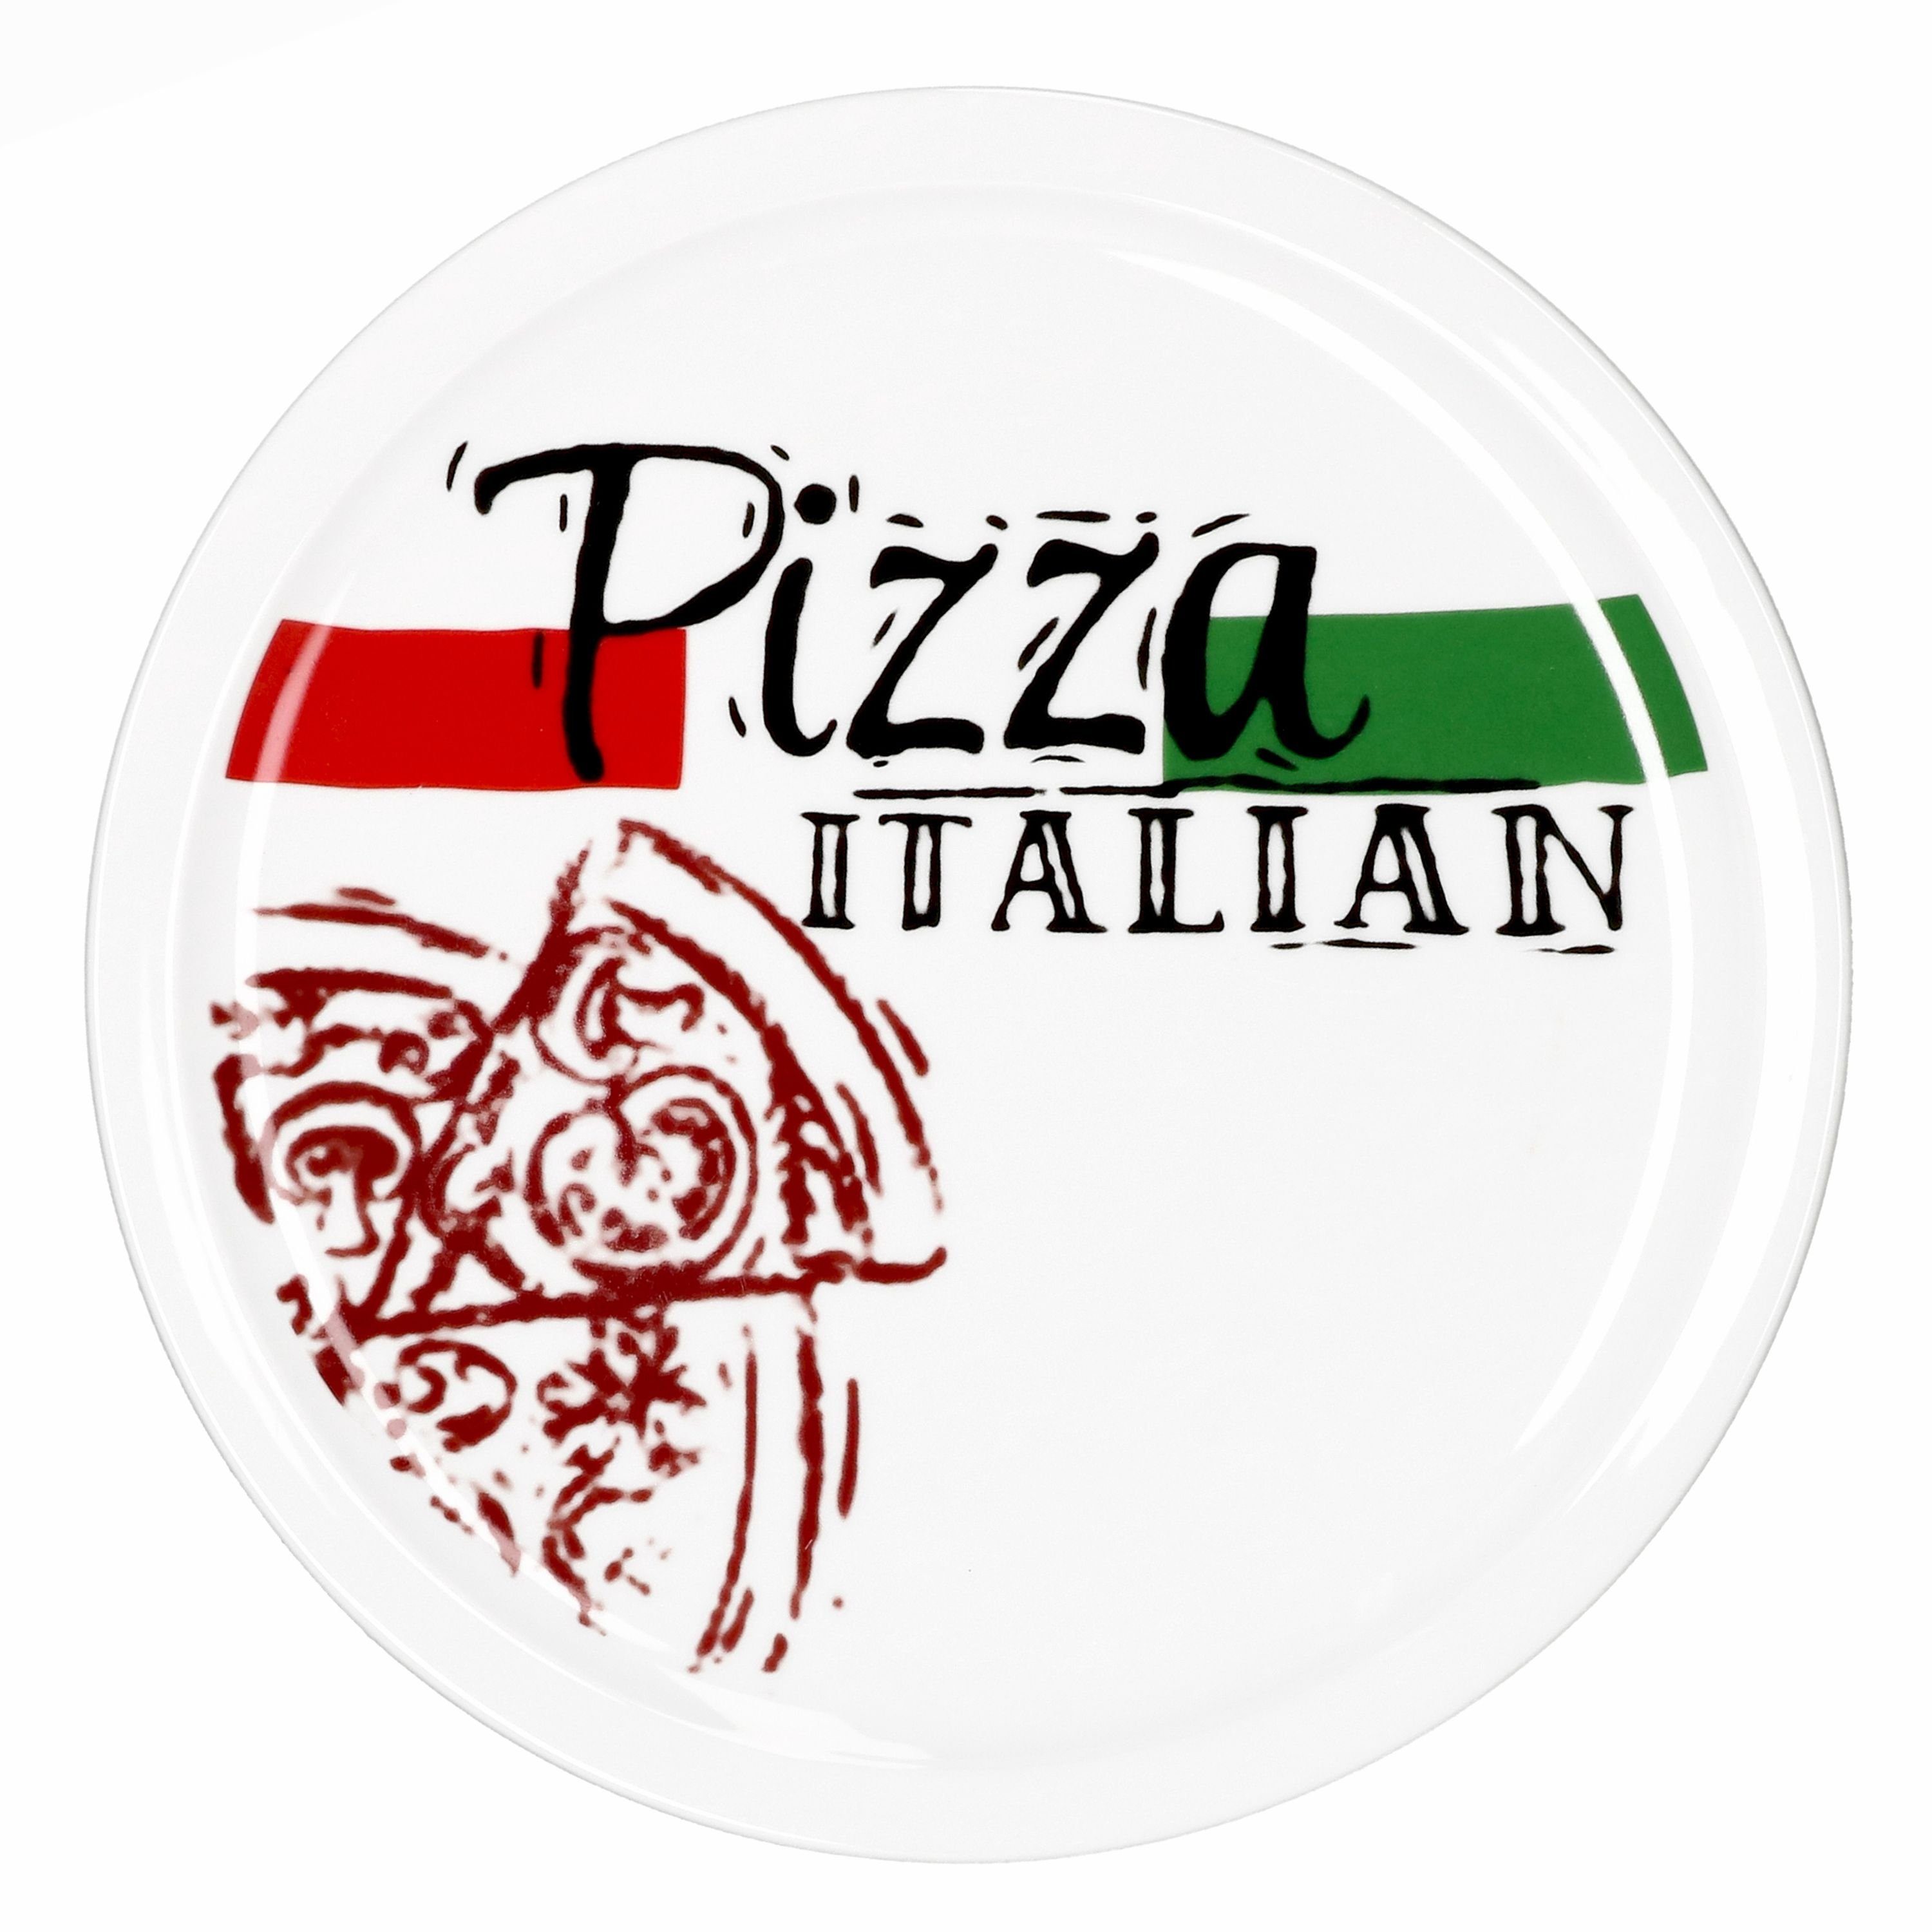 28cm 2er Italian Set Hot + & Pizzateller Pizzateller Pizza MamboCat Tasty 1x 1x